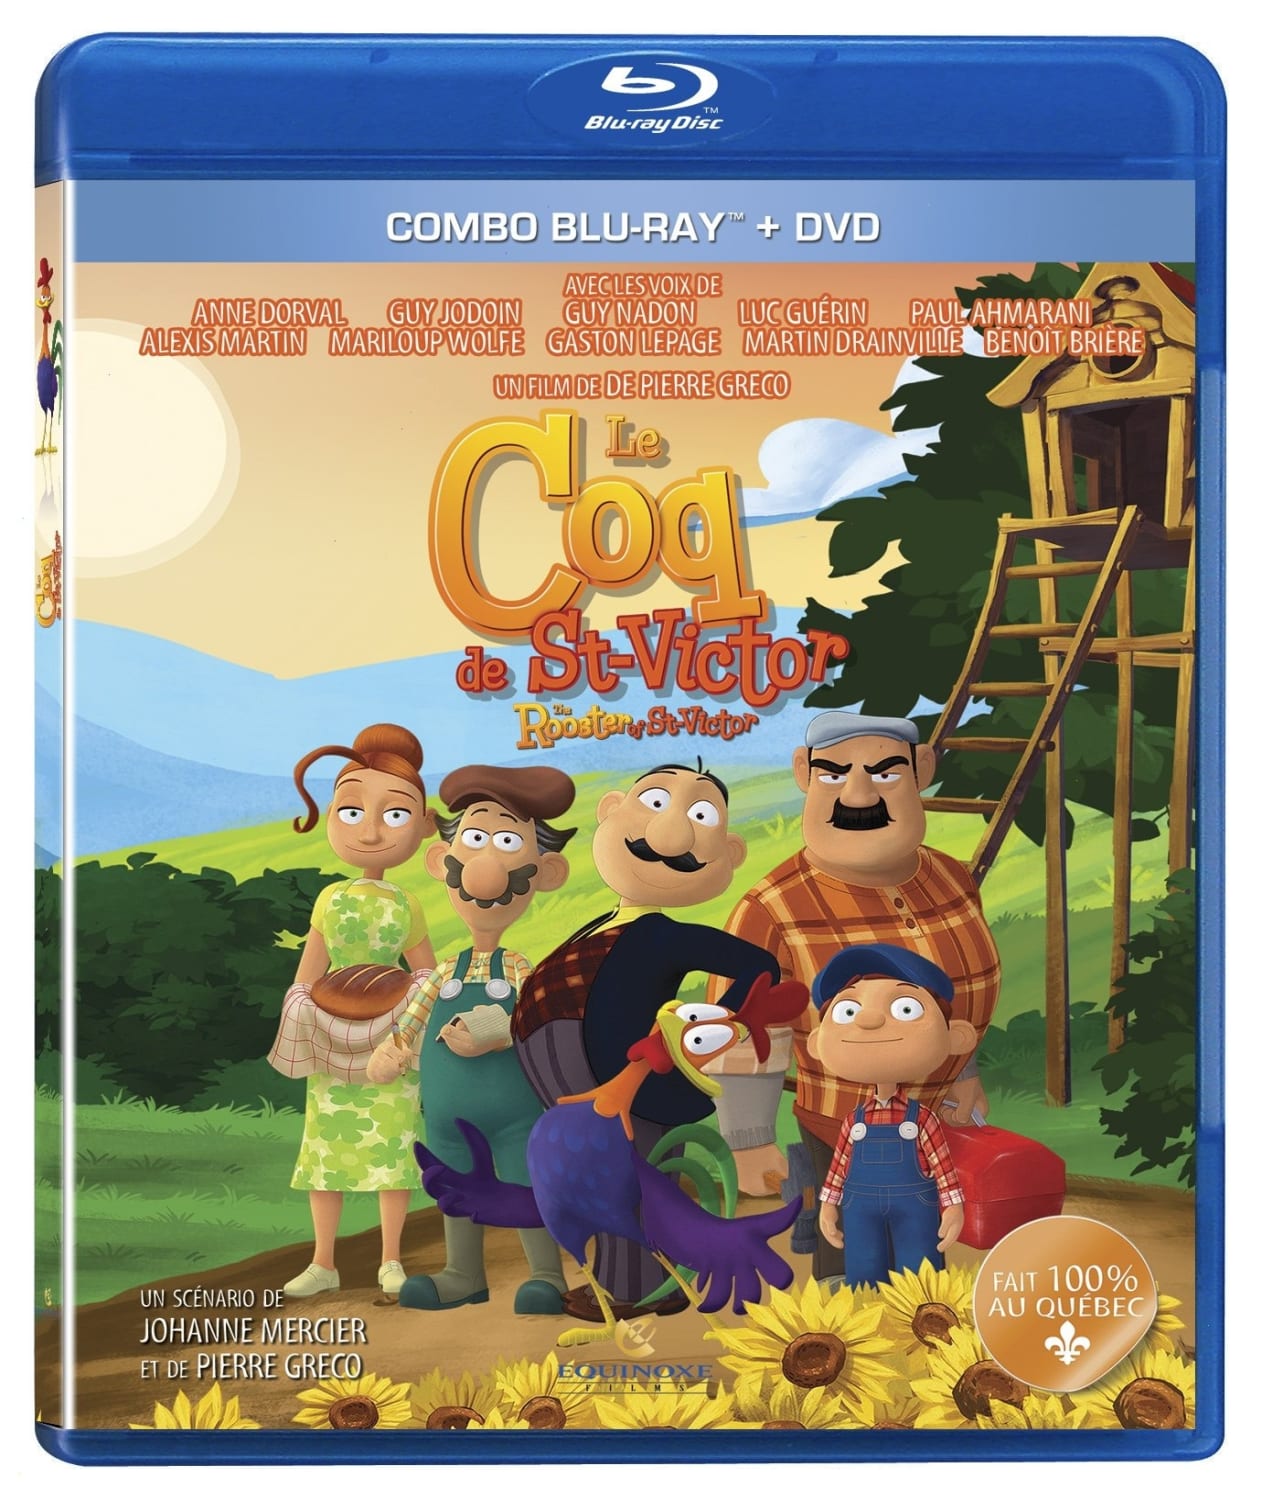 Le Coq de St-Victor (Blu-ray / DVD)